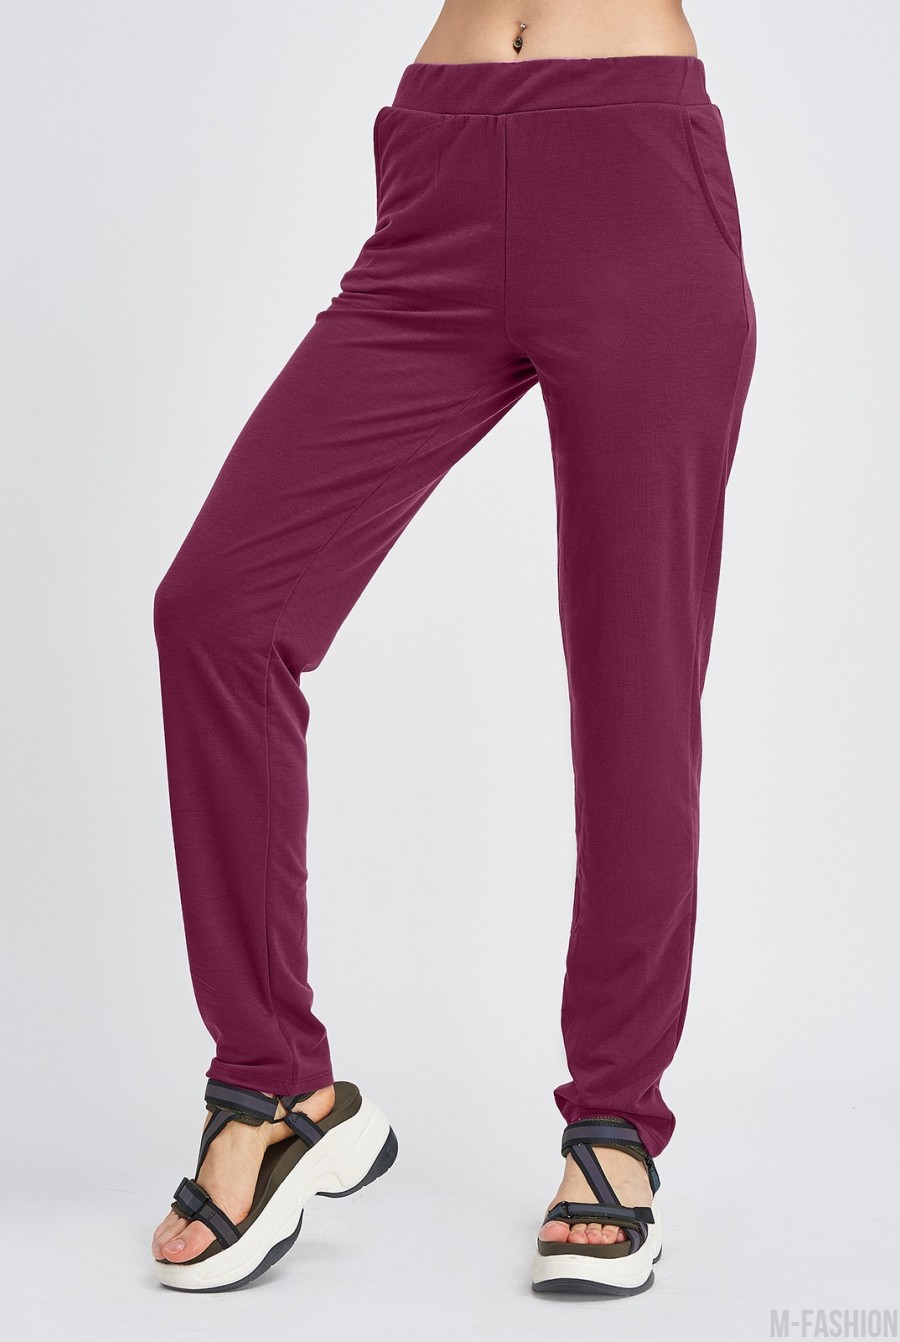 Бордовые трикотажные штаны с карманами - Фото 1